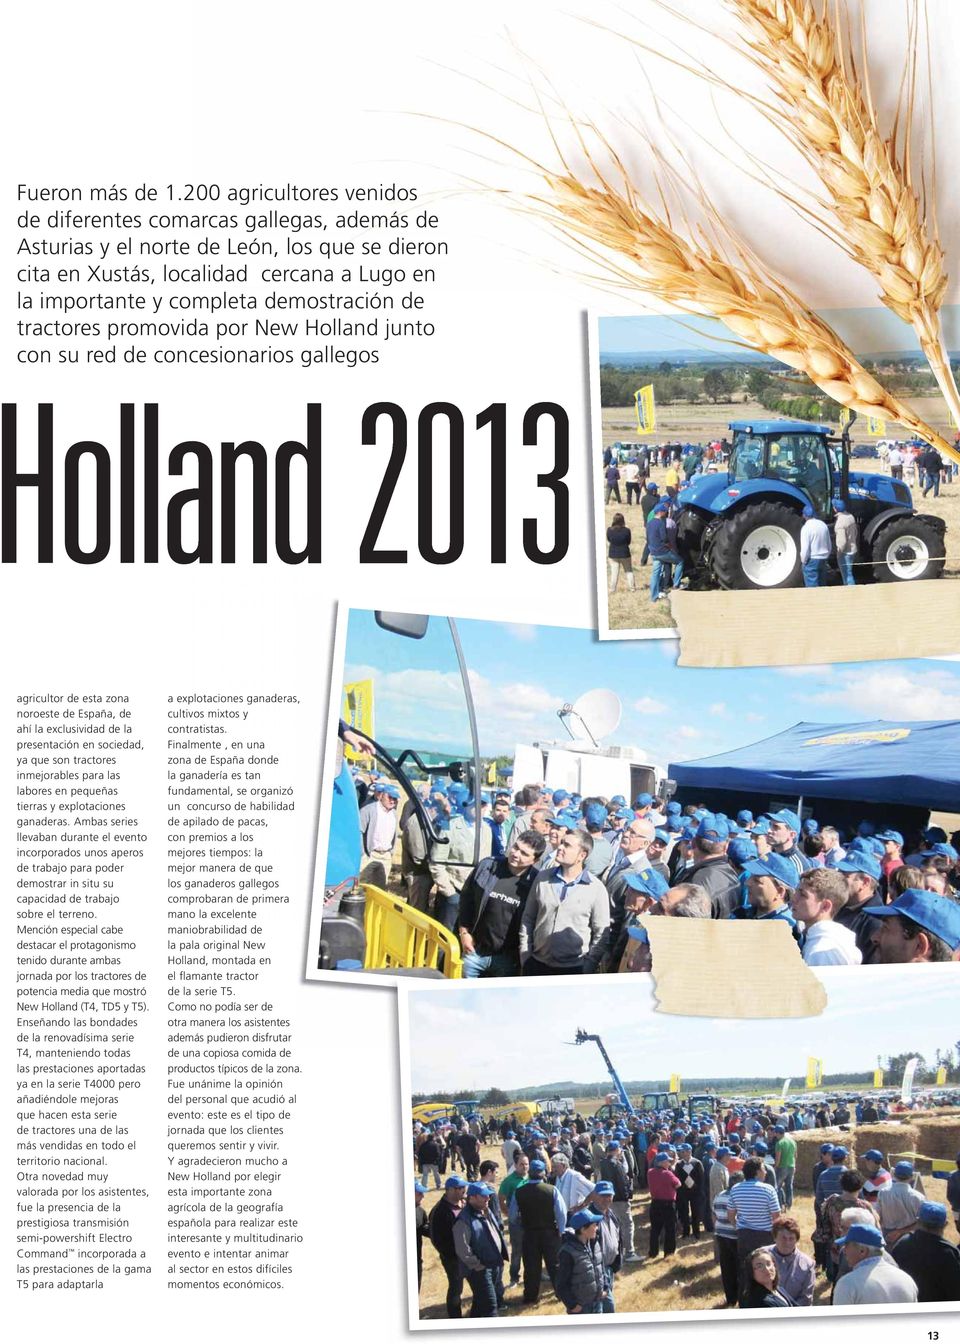 tractores promovida por New Holland junto con su red de concesionarios cesionarios gallegos Holland 2013 agricultor de esta zona noroeste de España, de ahí la exclusividad de la presentación en